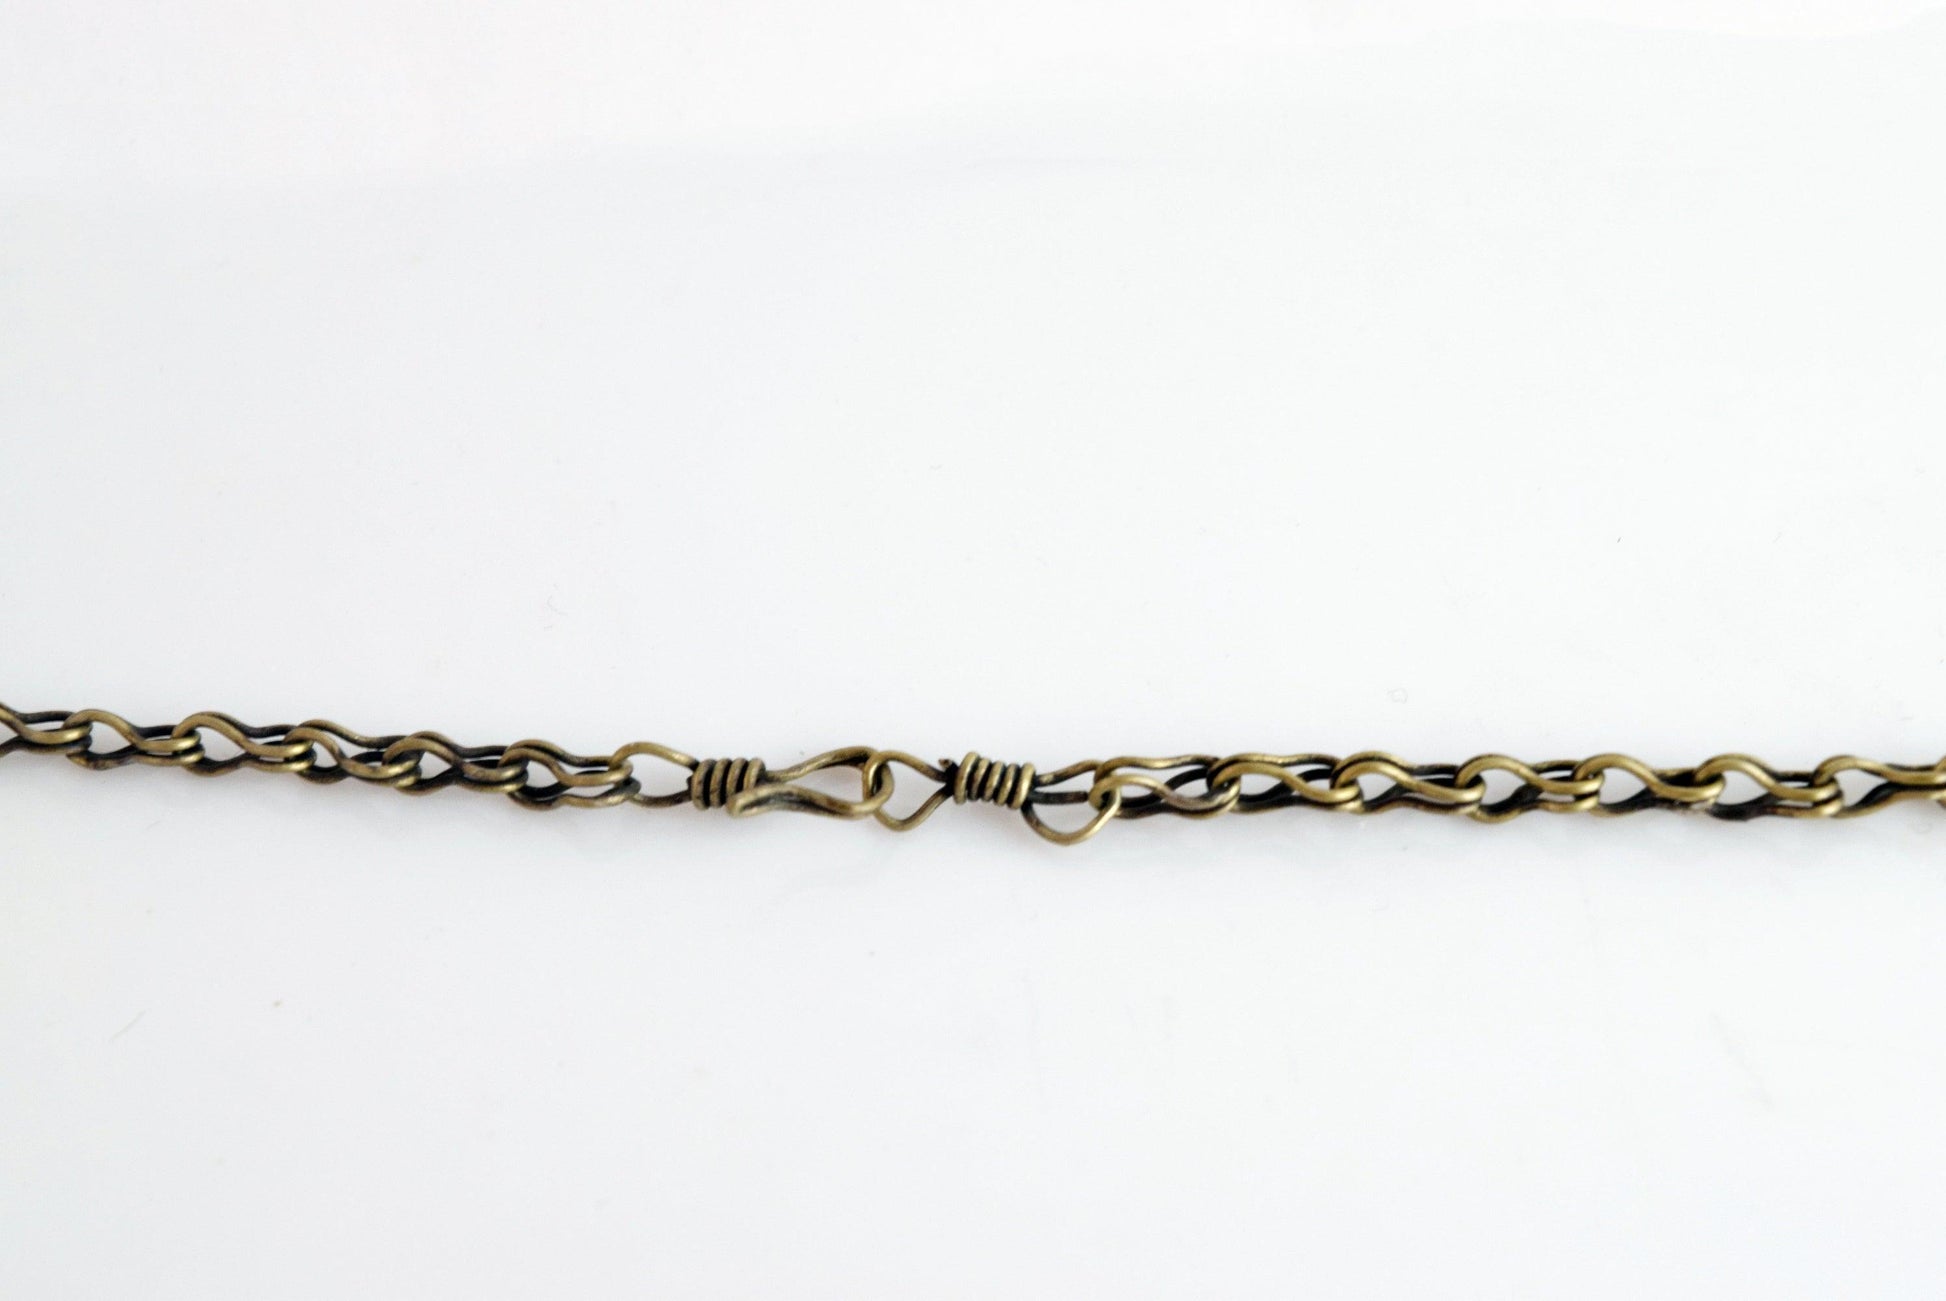 handmade chain